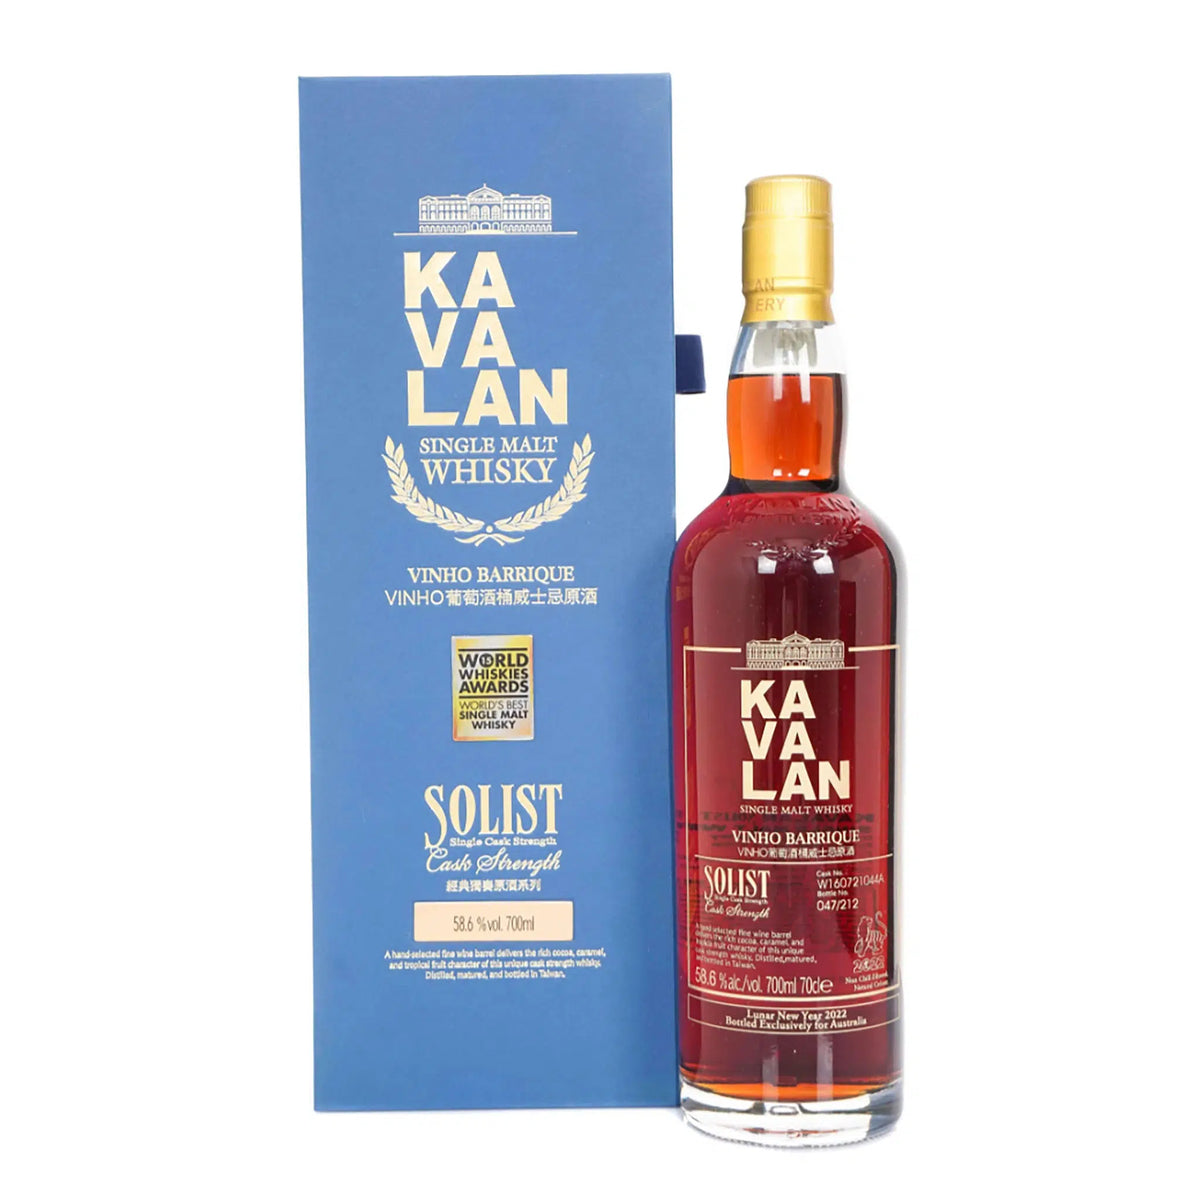 Kavalan Solist Vinho Barrique (Australian Exclusive Release) Whisky 700ml